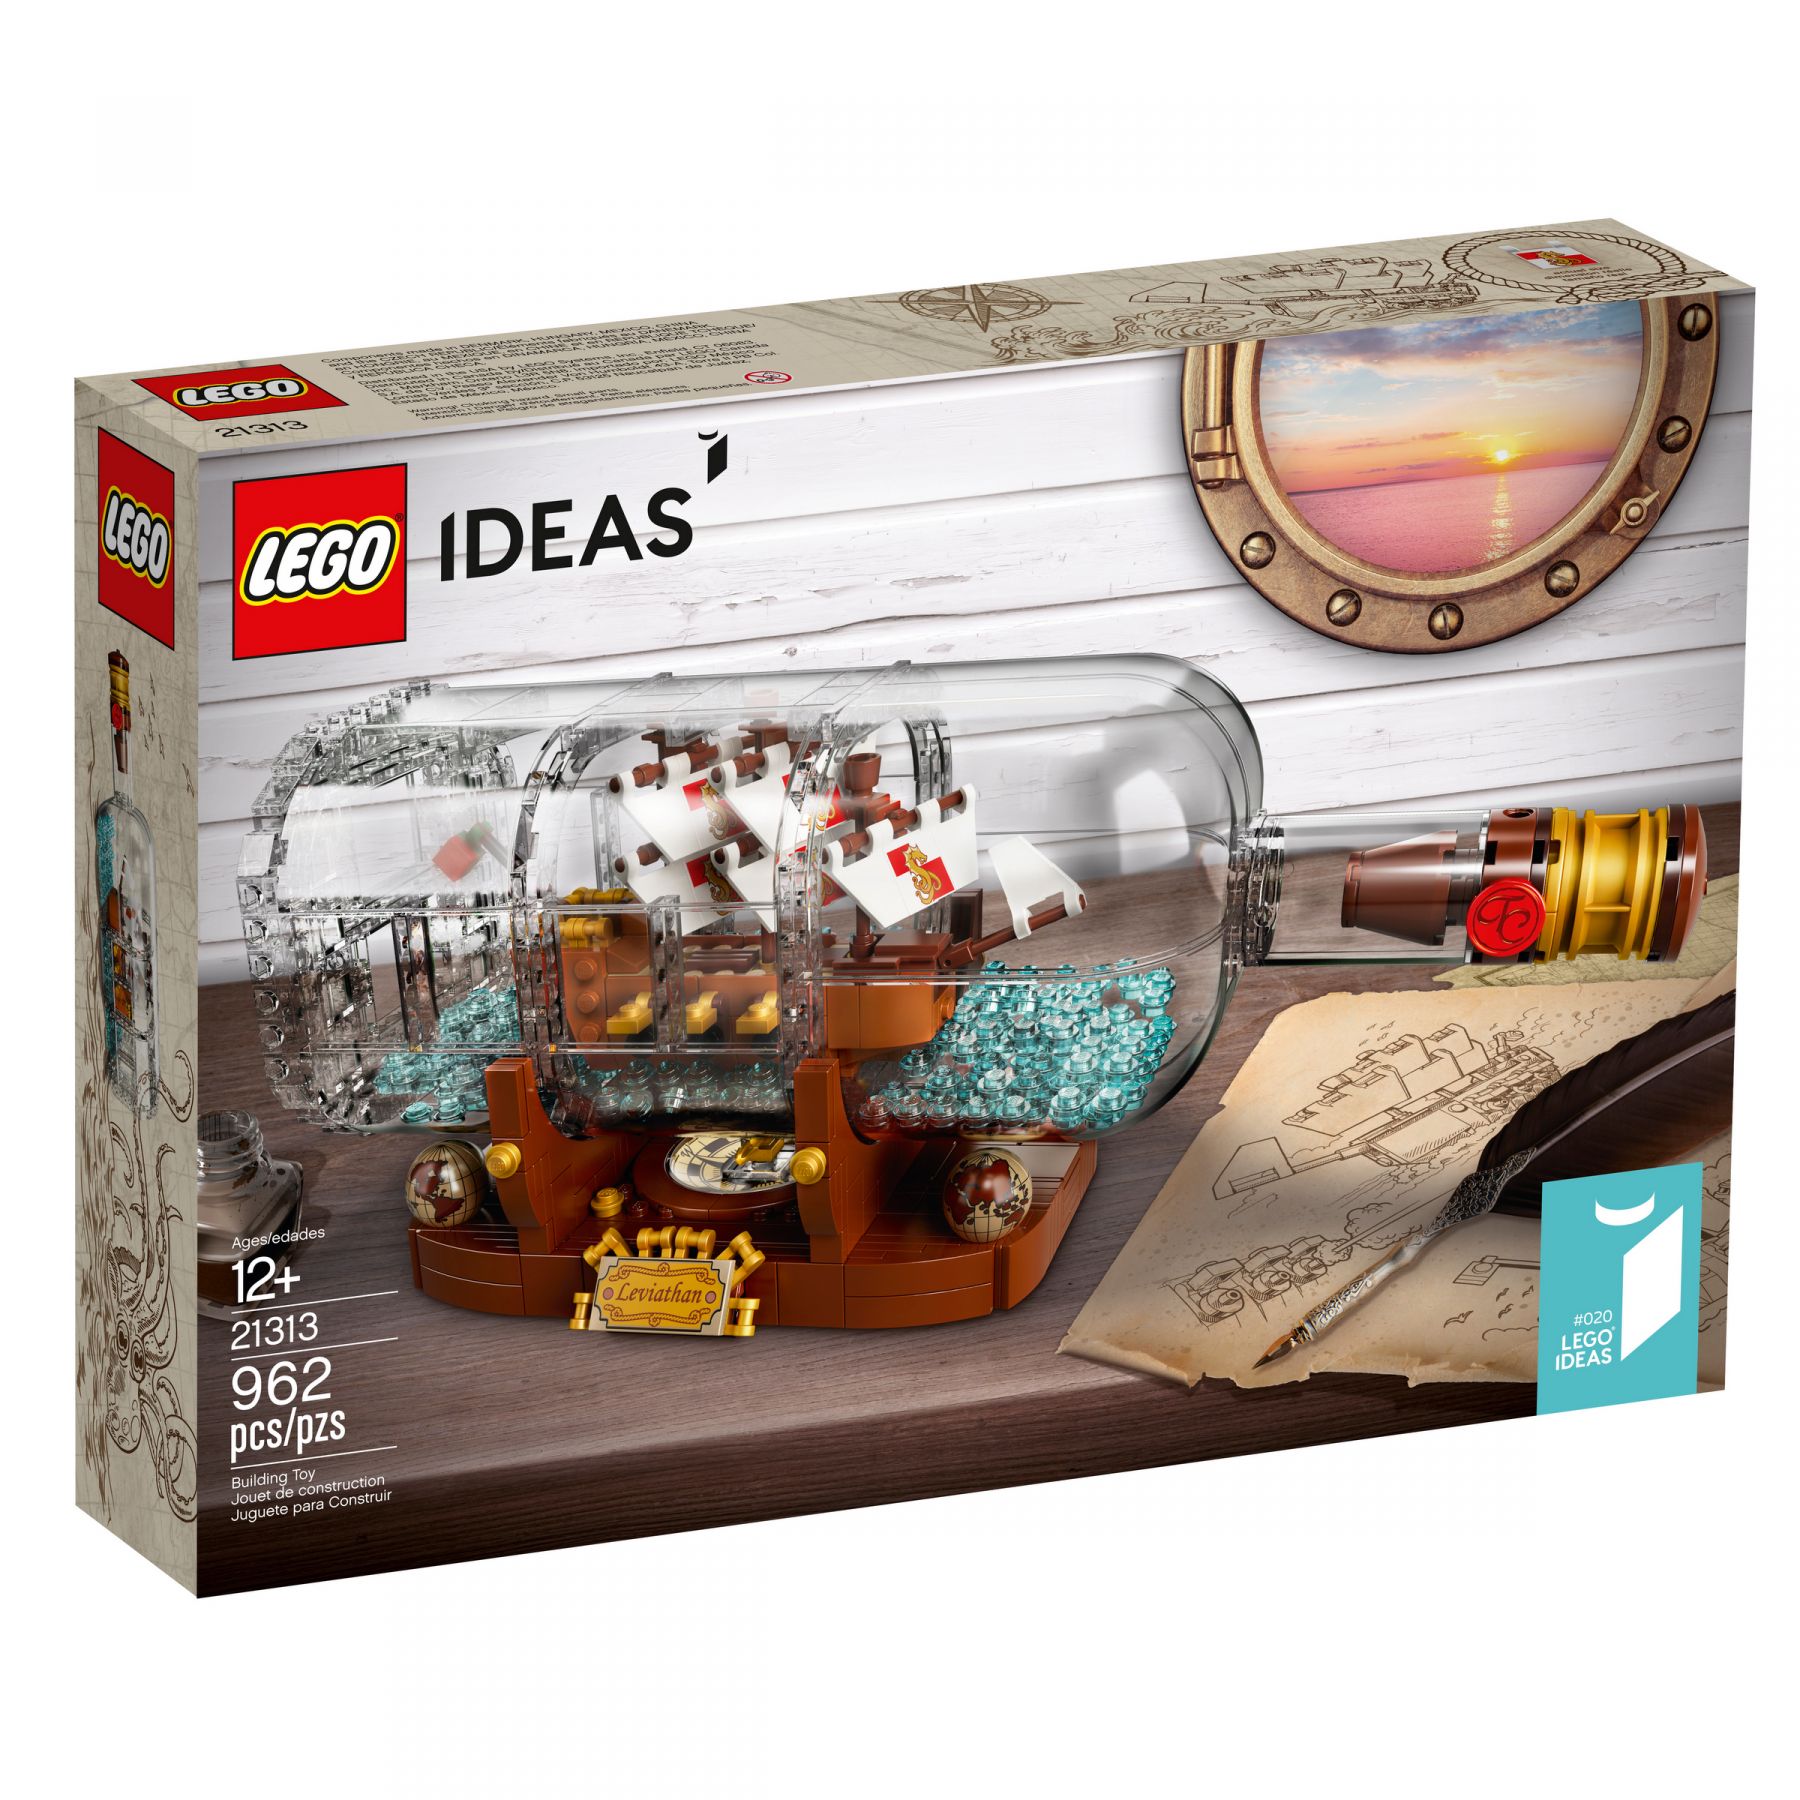 LEGO Ideas 21313 Schiff in der Flasche LEGO_21313_alt1.jpg